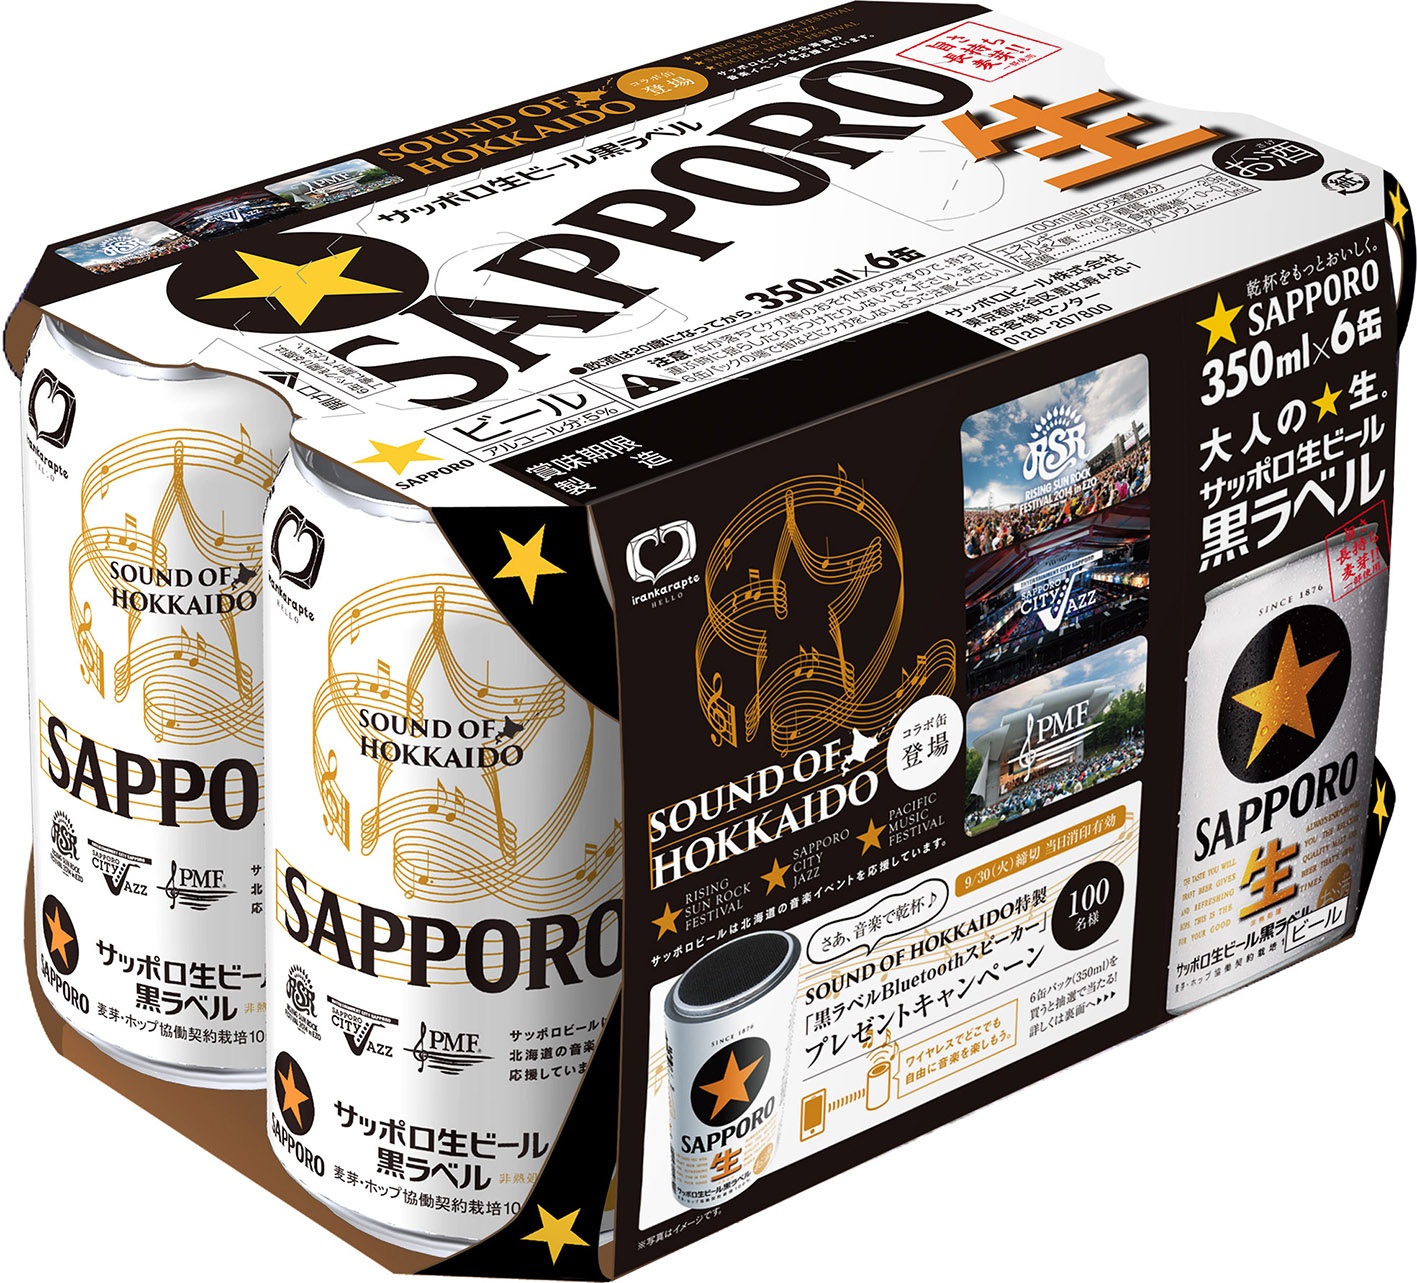 サッポロ生ビール黒ラベル「ＳＯＵＮＤ ＯＦ ＨＯＫＫＡＩＤＯ缶」限定発売 | ニュースリリース | サッポロビール